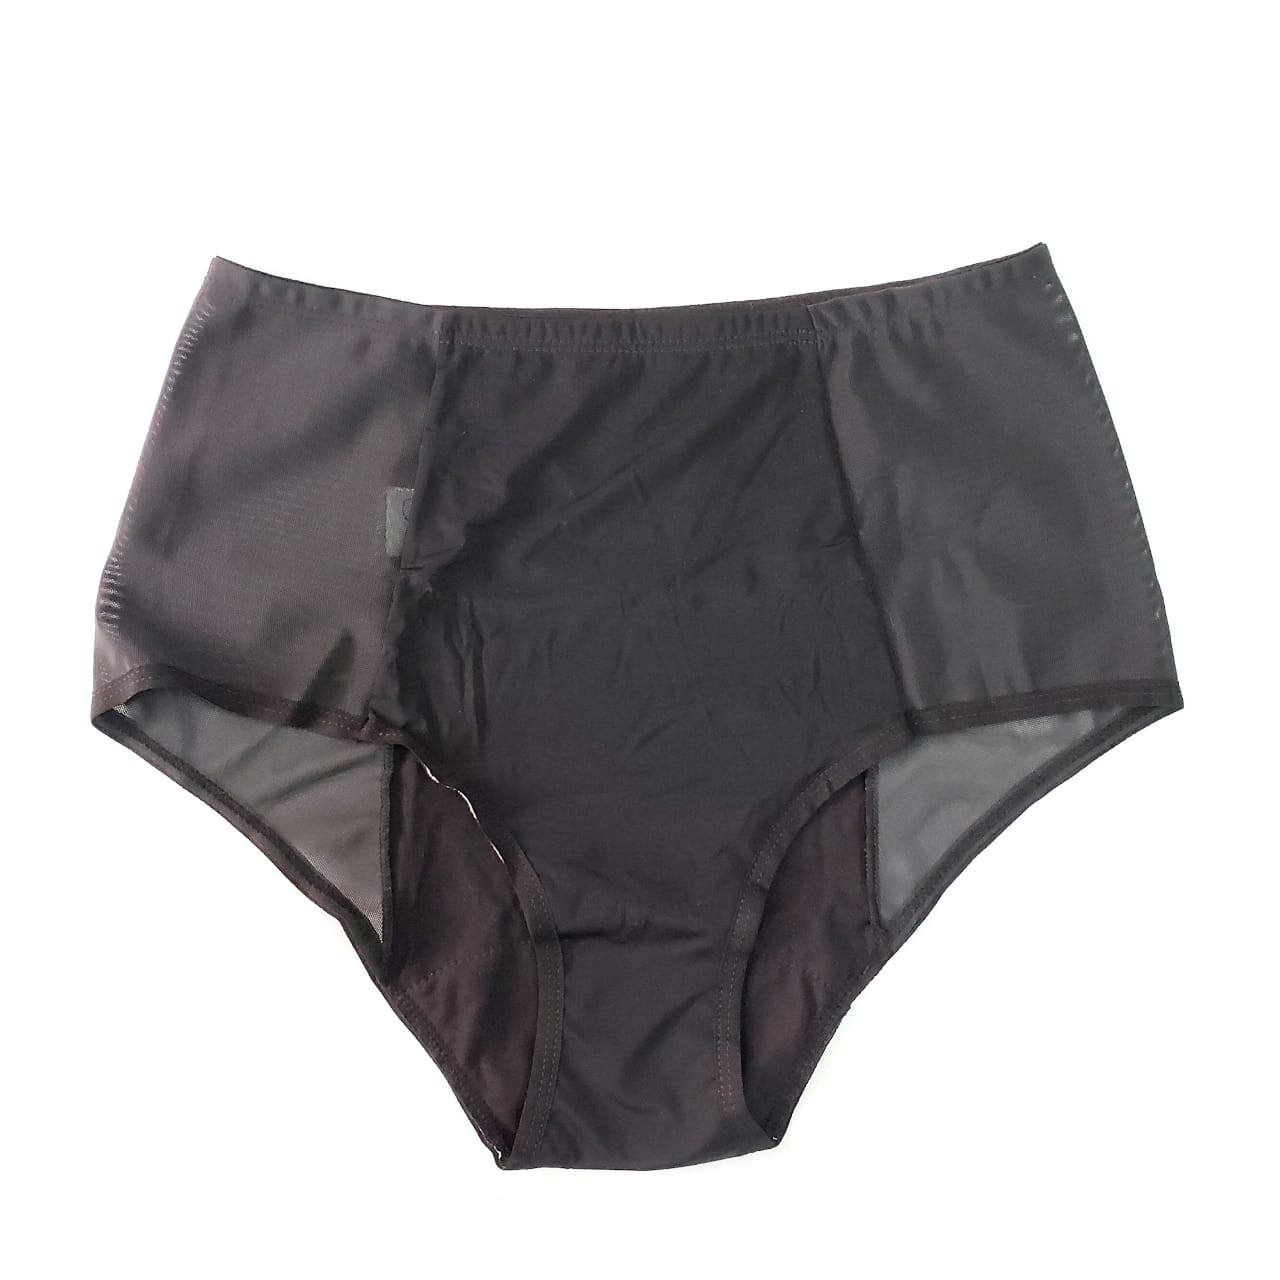 Panties cintura alta absorbentes para menstruación Selem - La Tortuga y La Liebre